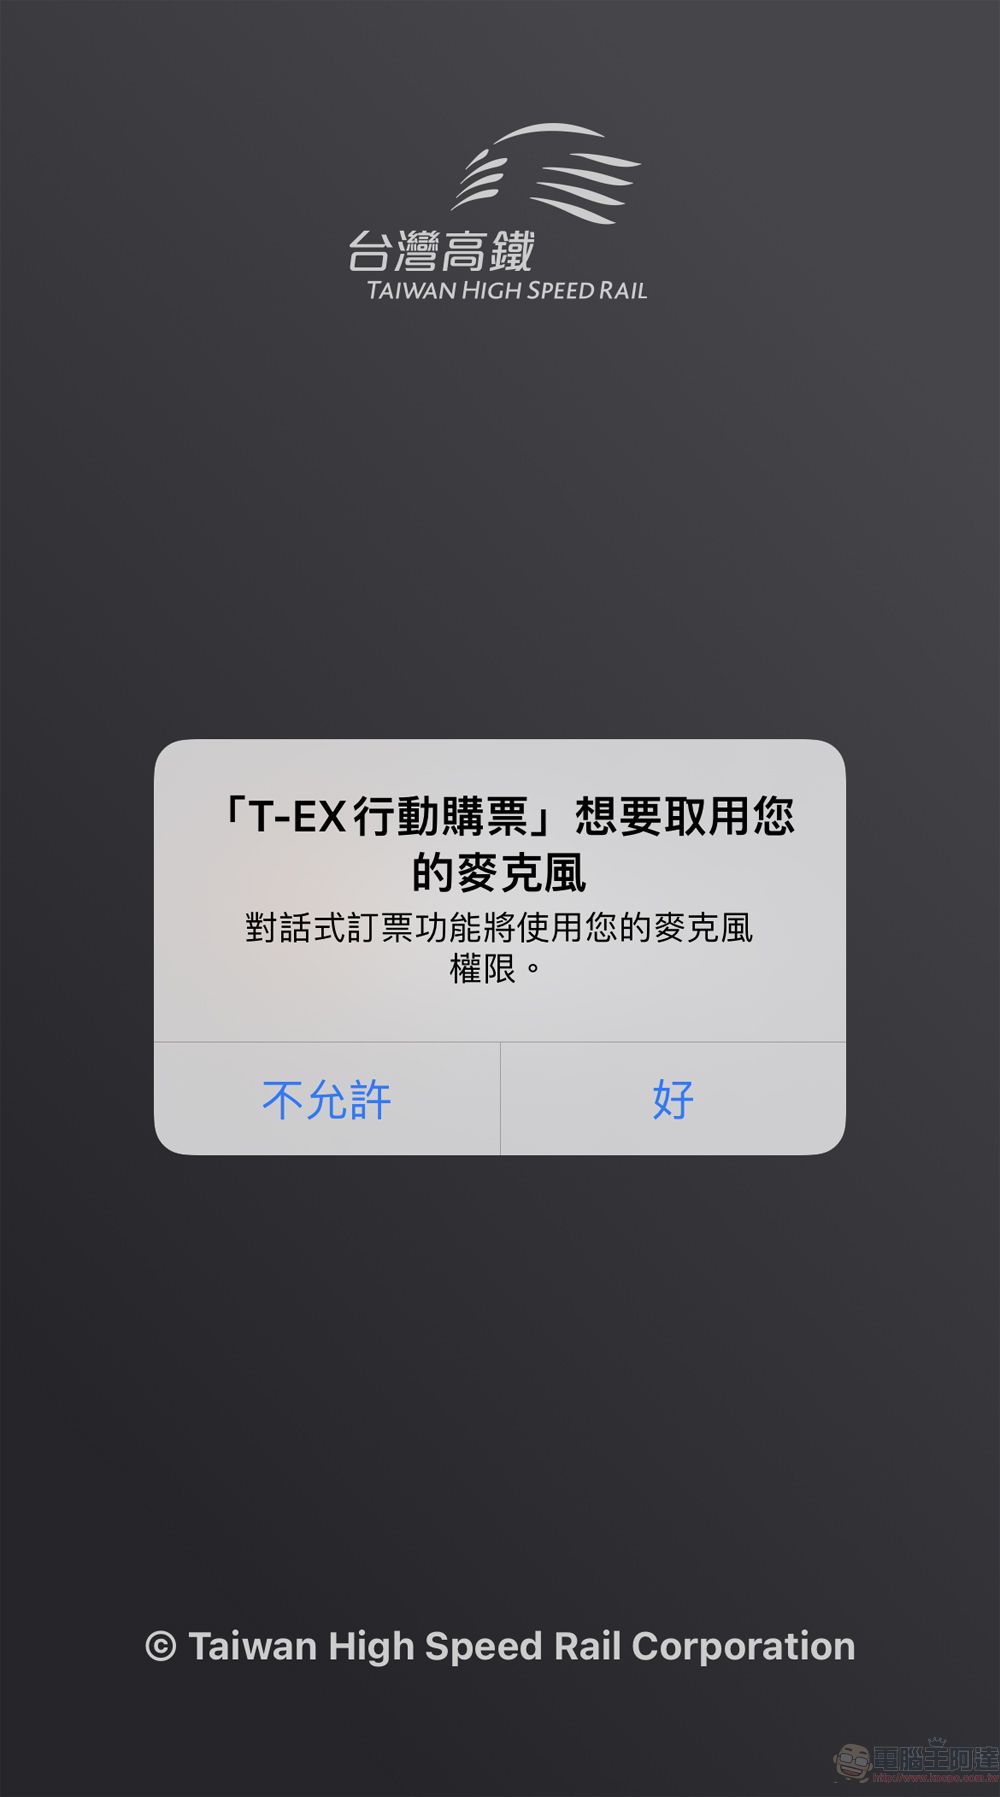 「T-EX行動購票」App新增「智慧語音訂票」功能 可直接語音訂票 - 電腦王阿達